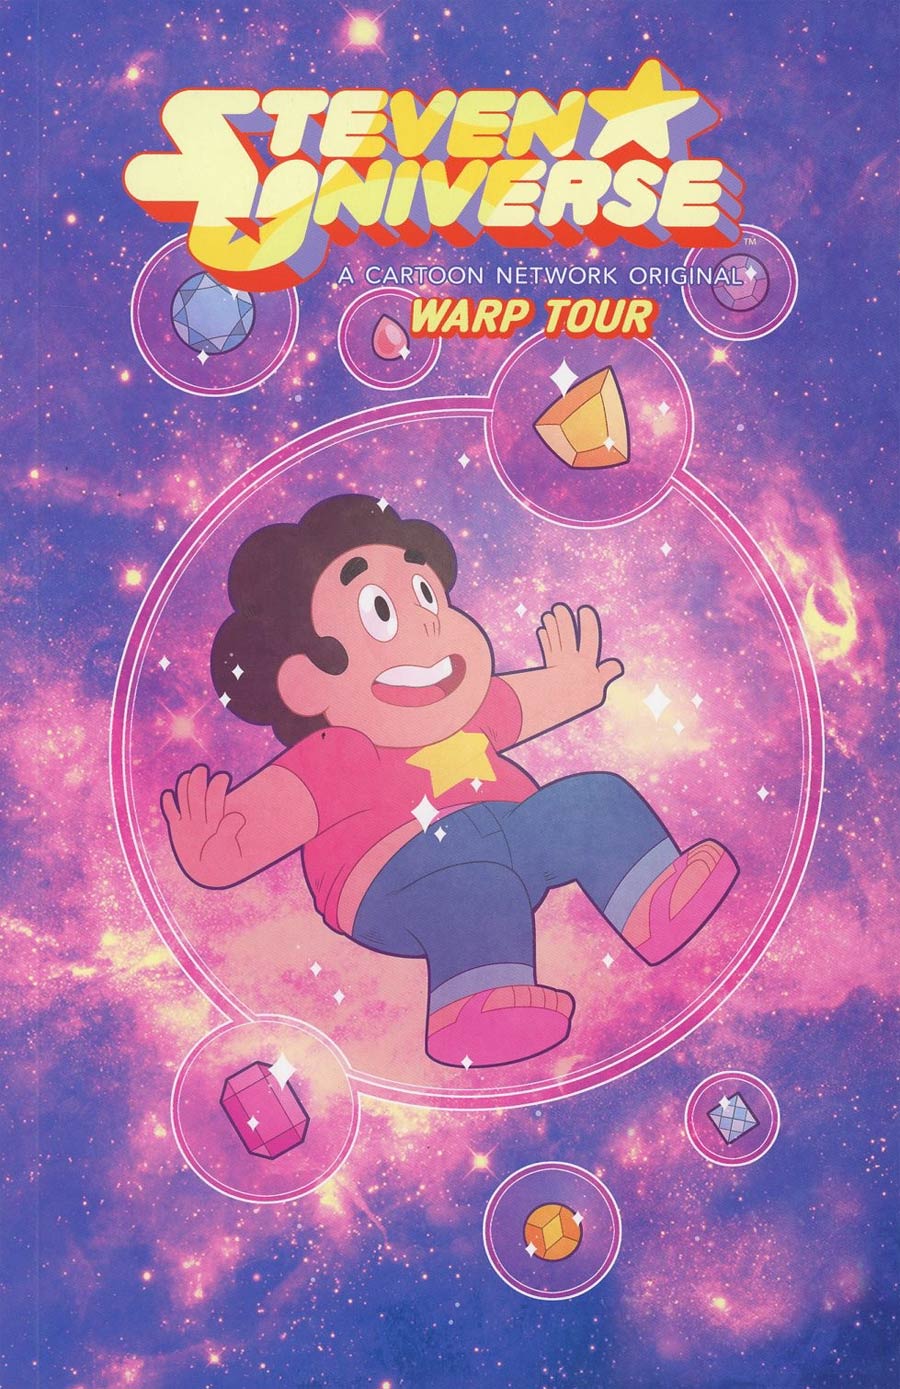 Steven Universe Ongoing Vol 1 Warp Tour TP